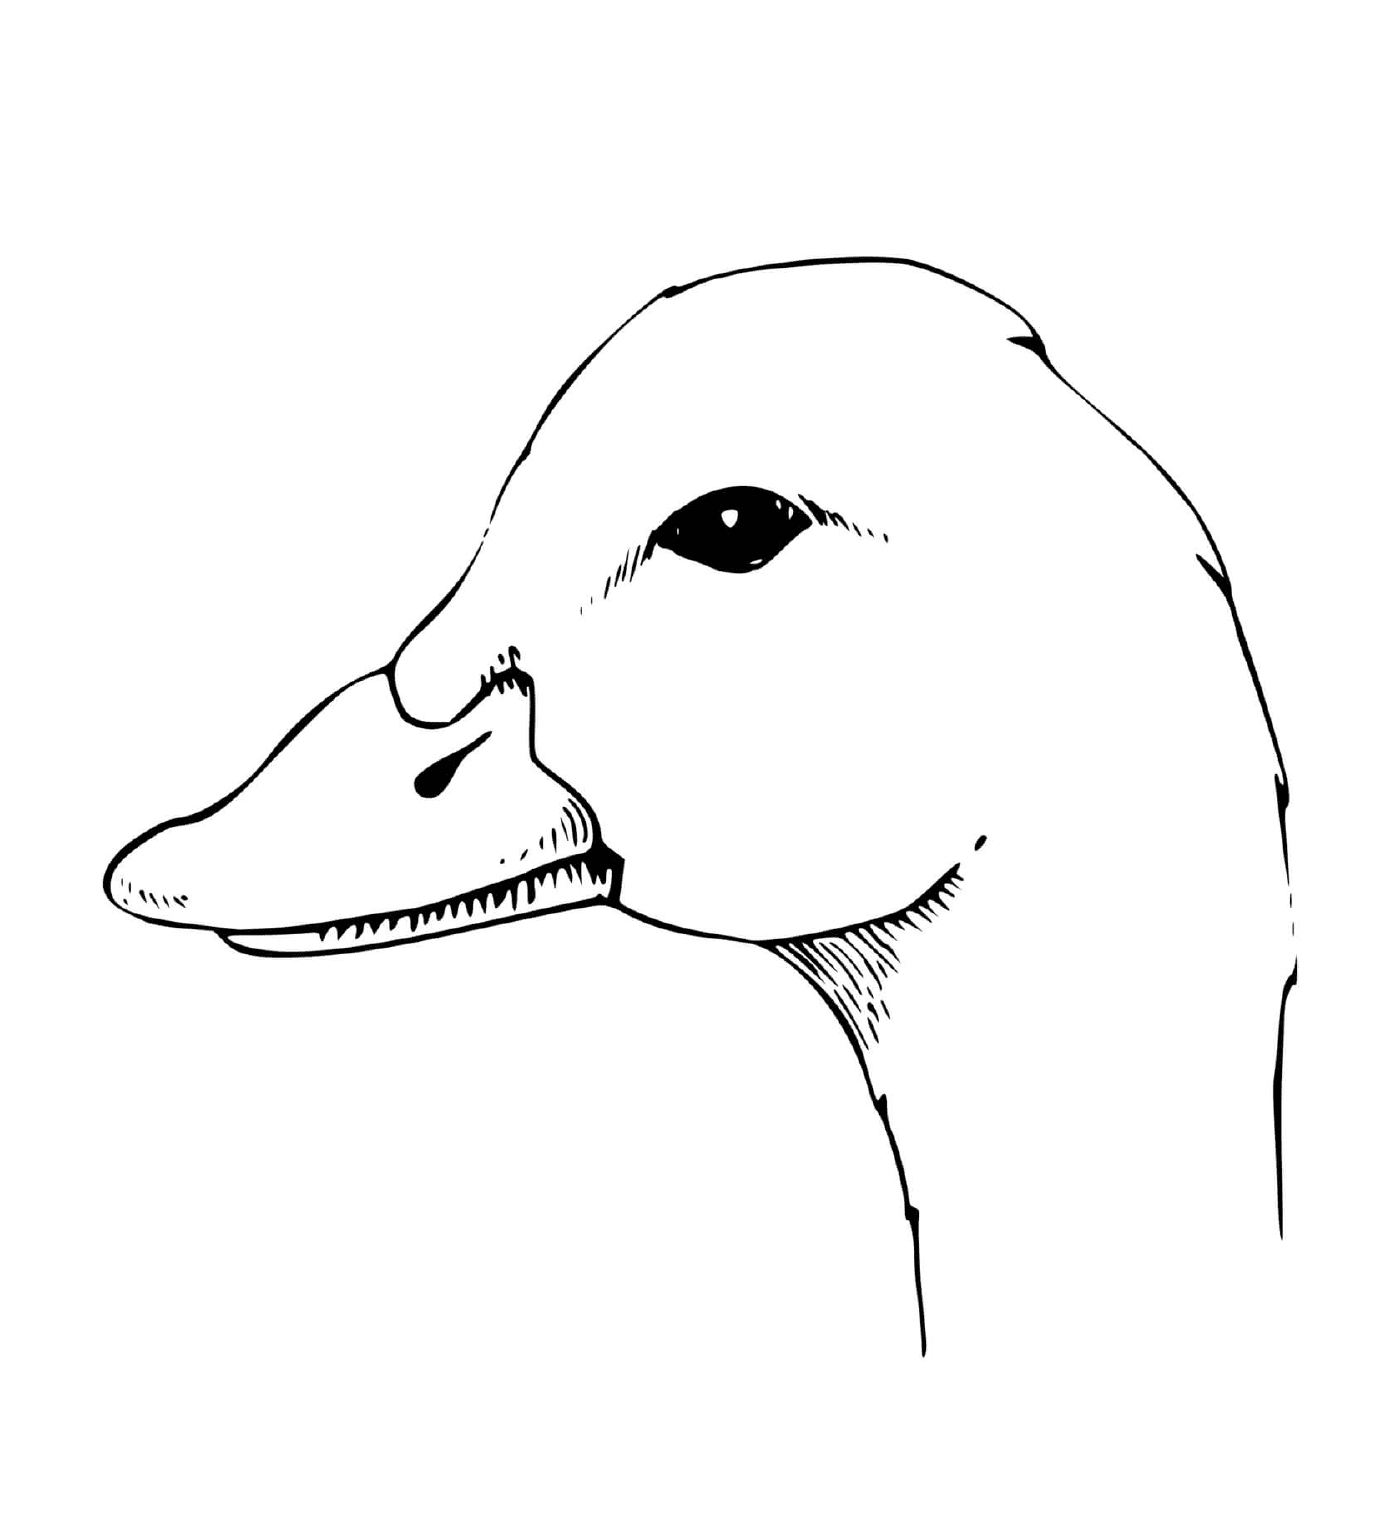   la tête d'un canard 